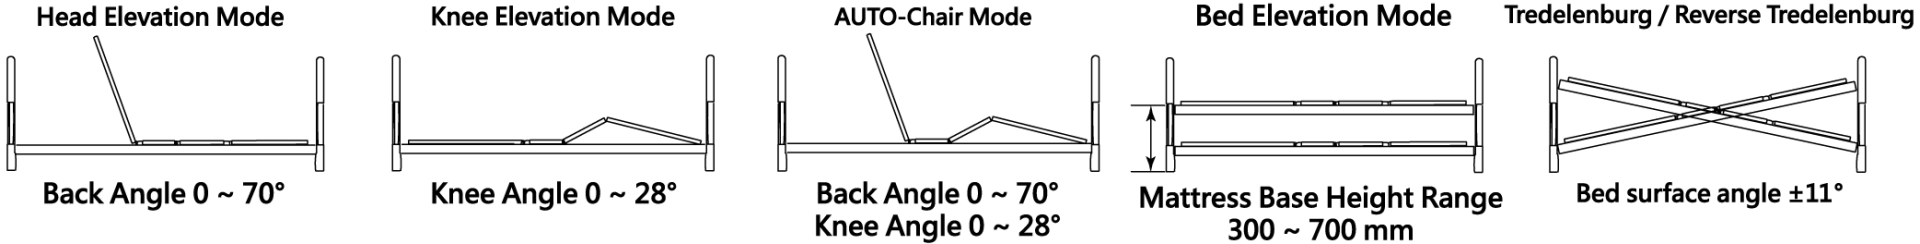 Joson-Care│HomeCare Electric Bed│EN-3M│Modo de función Diagrama de ángulo de elevación de la cama